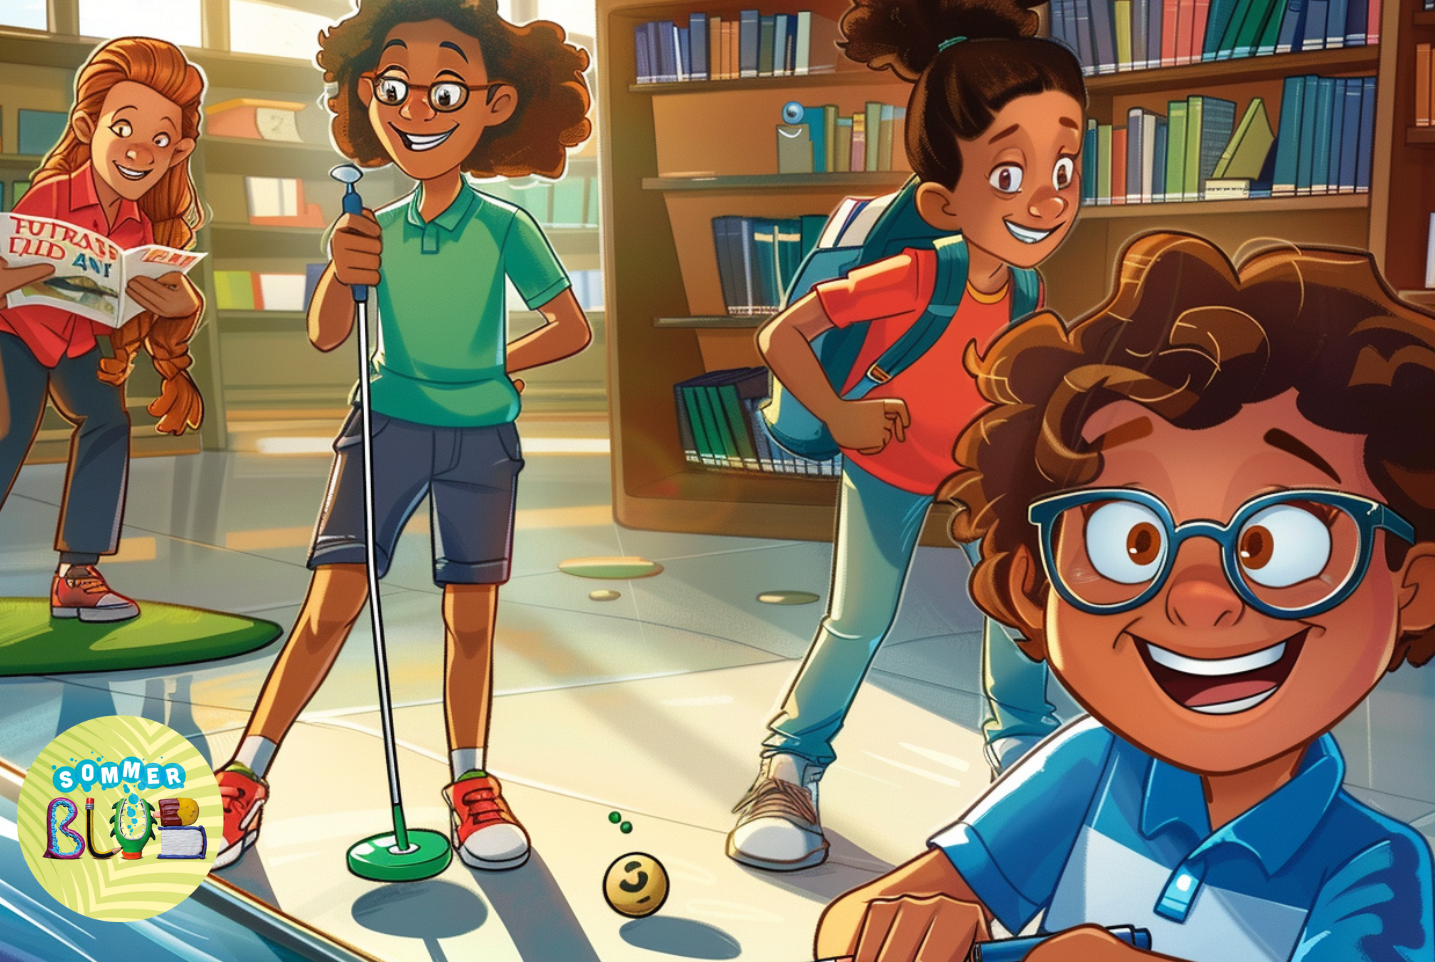 Ilustracja przedstawiająca dzieci bawiące się w minigolfa w bibliotece